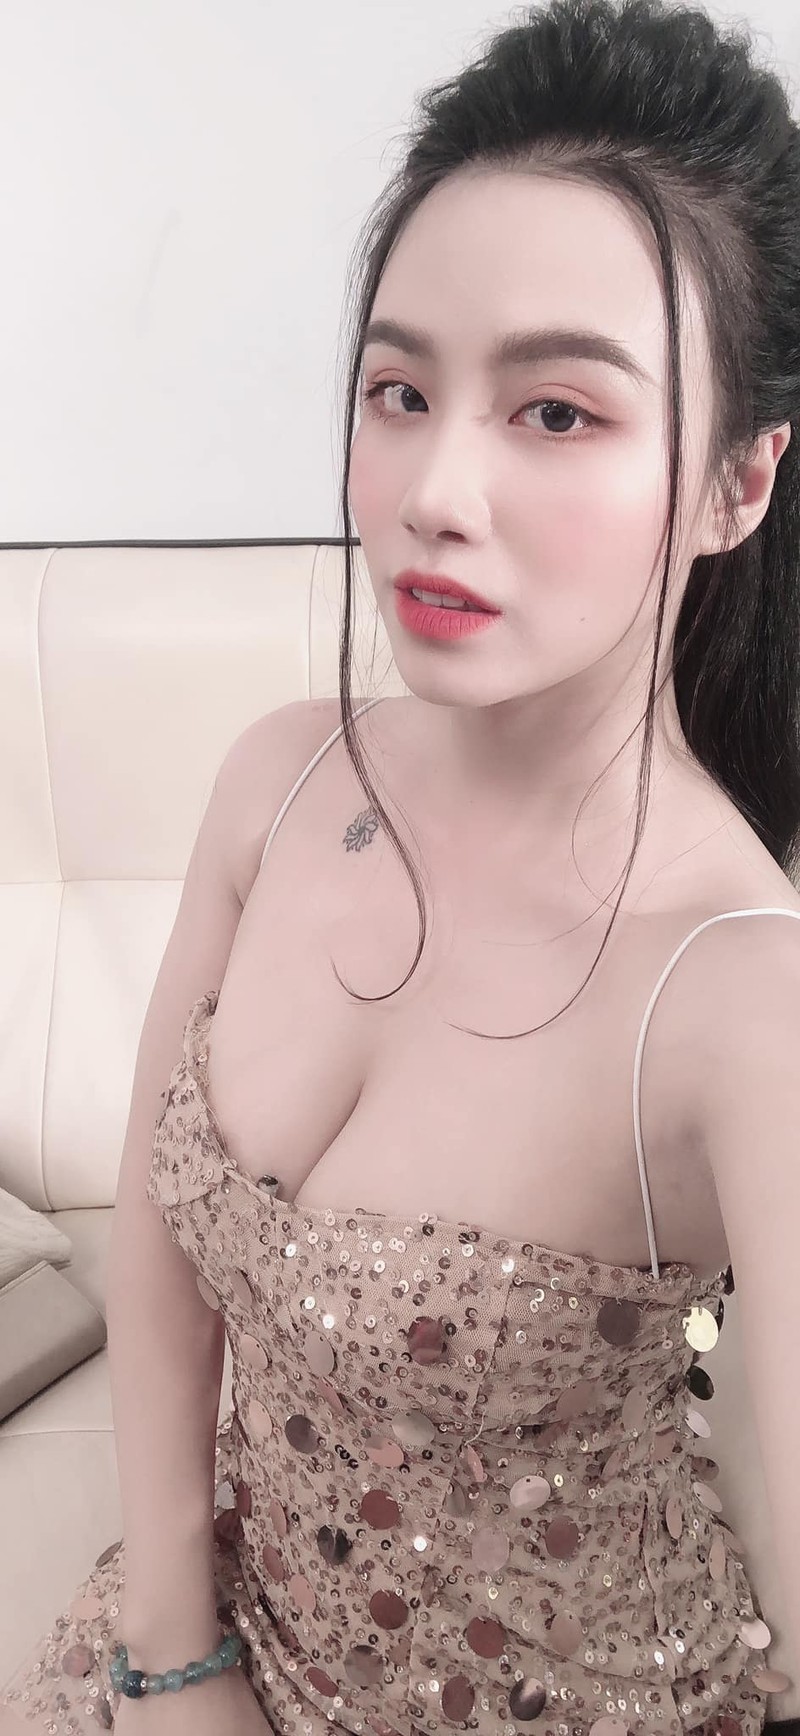 “Nong mat” phong cach thoi trang thieu vai cua hot girl Linh Miu-Hinh-4